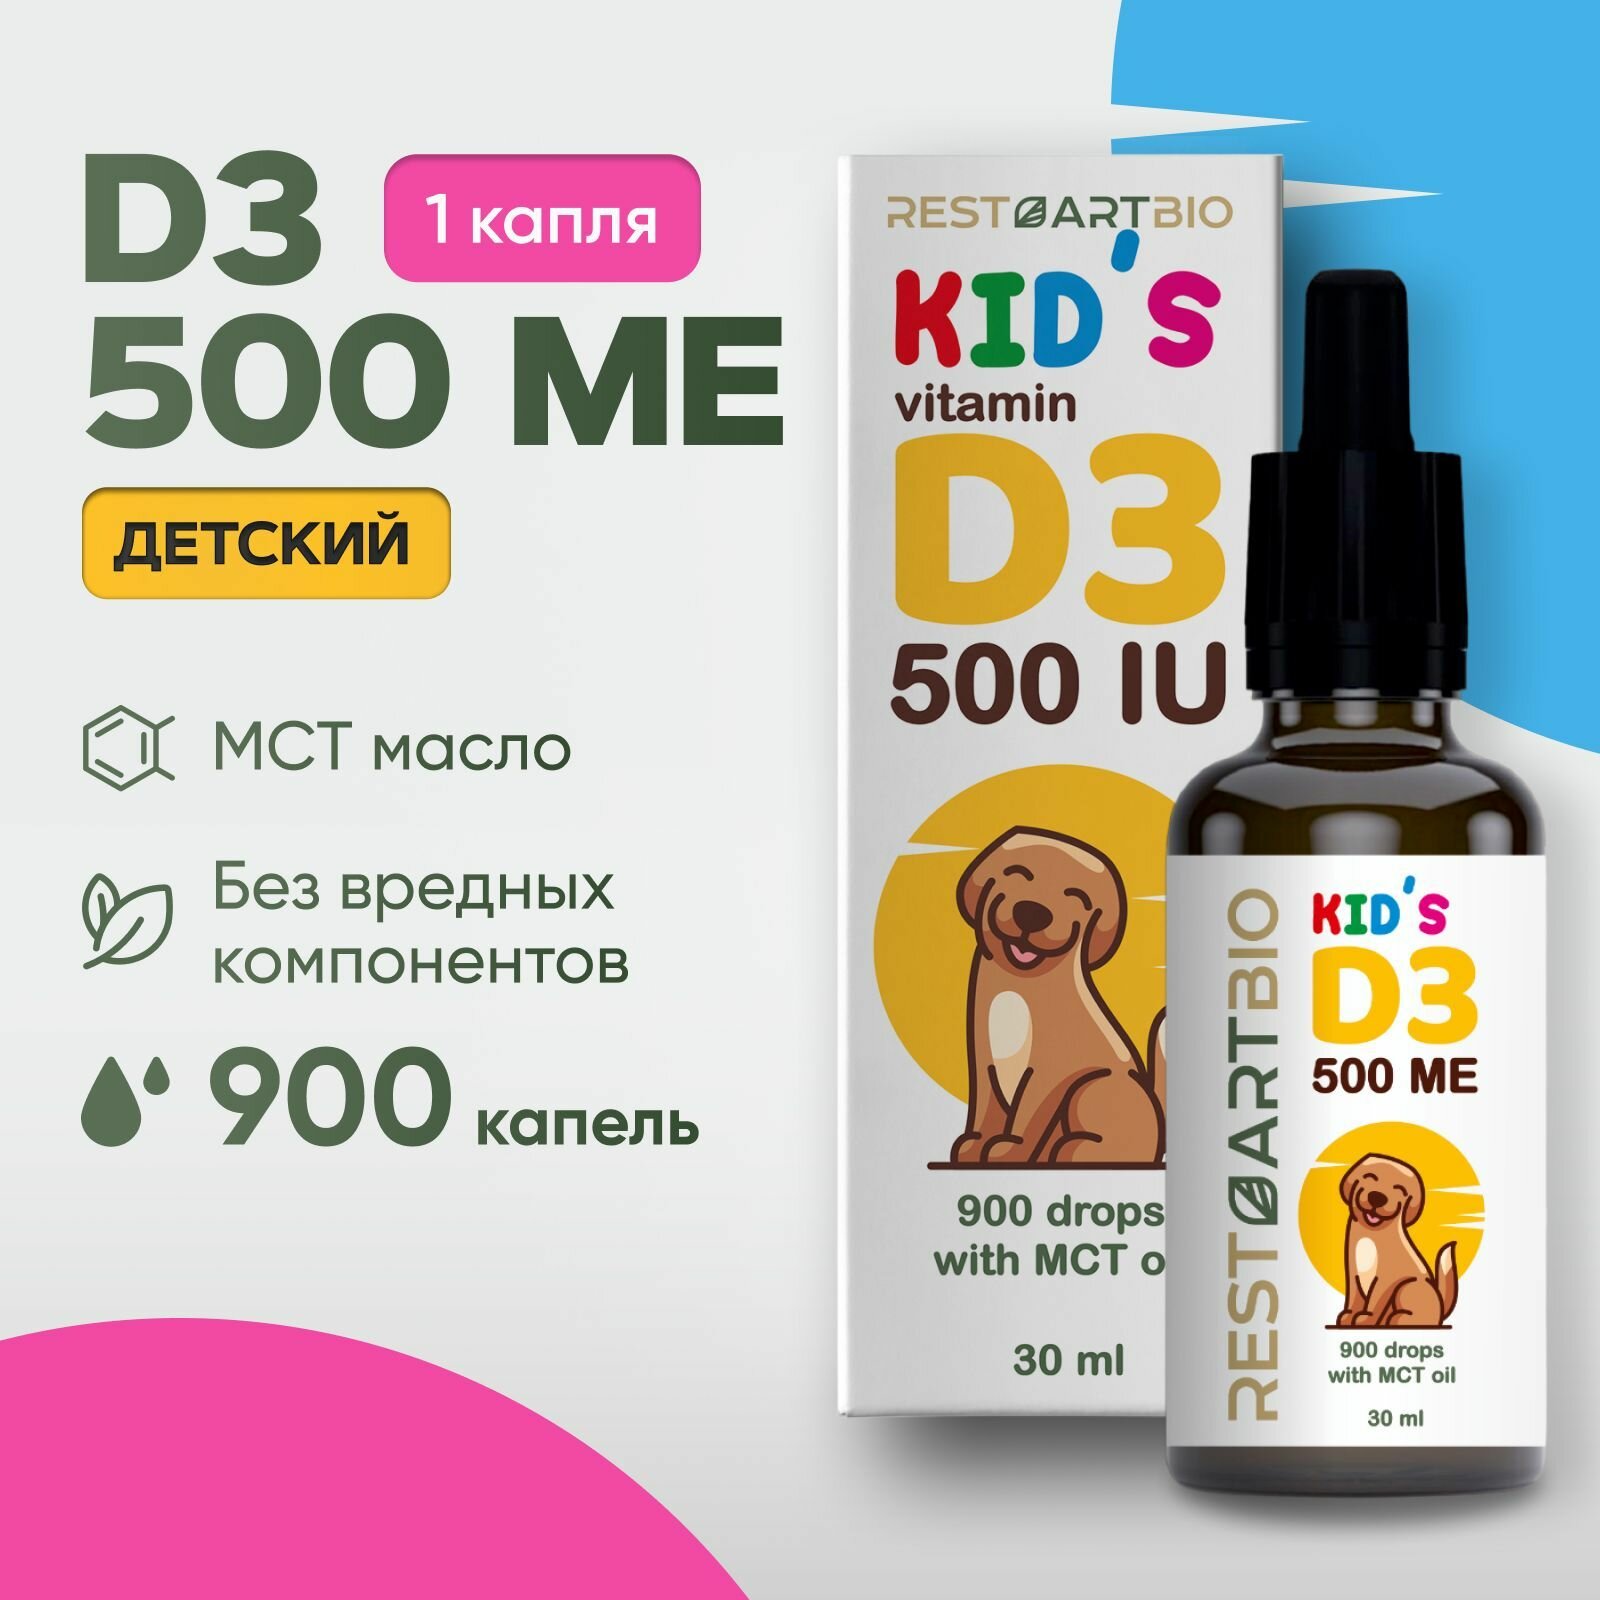 Витамин Д3 500 МЕ RestartBio детский жидкий без вредных компонентов МСТ масло